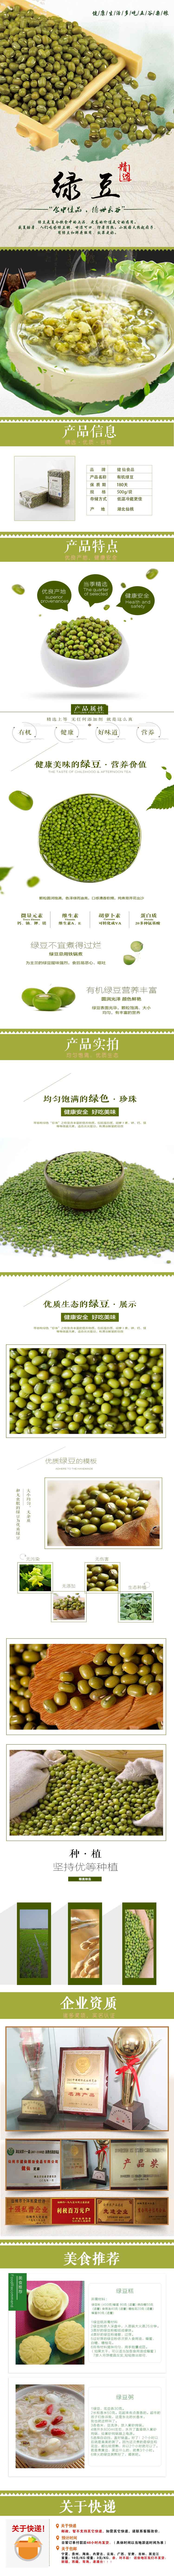 【仙桃馆】健仙粮油 农家自产绿豆 五谷杂粮 非转基因500g包邮